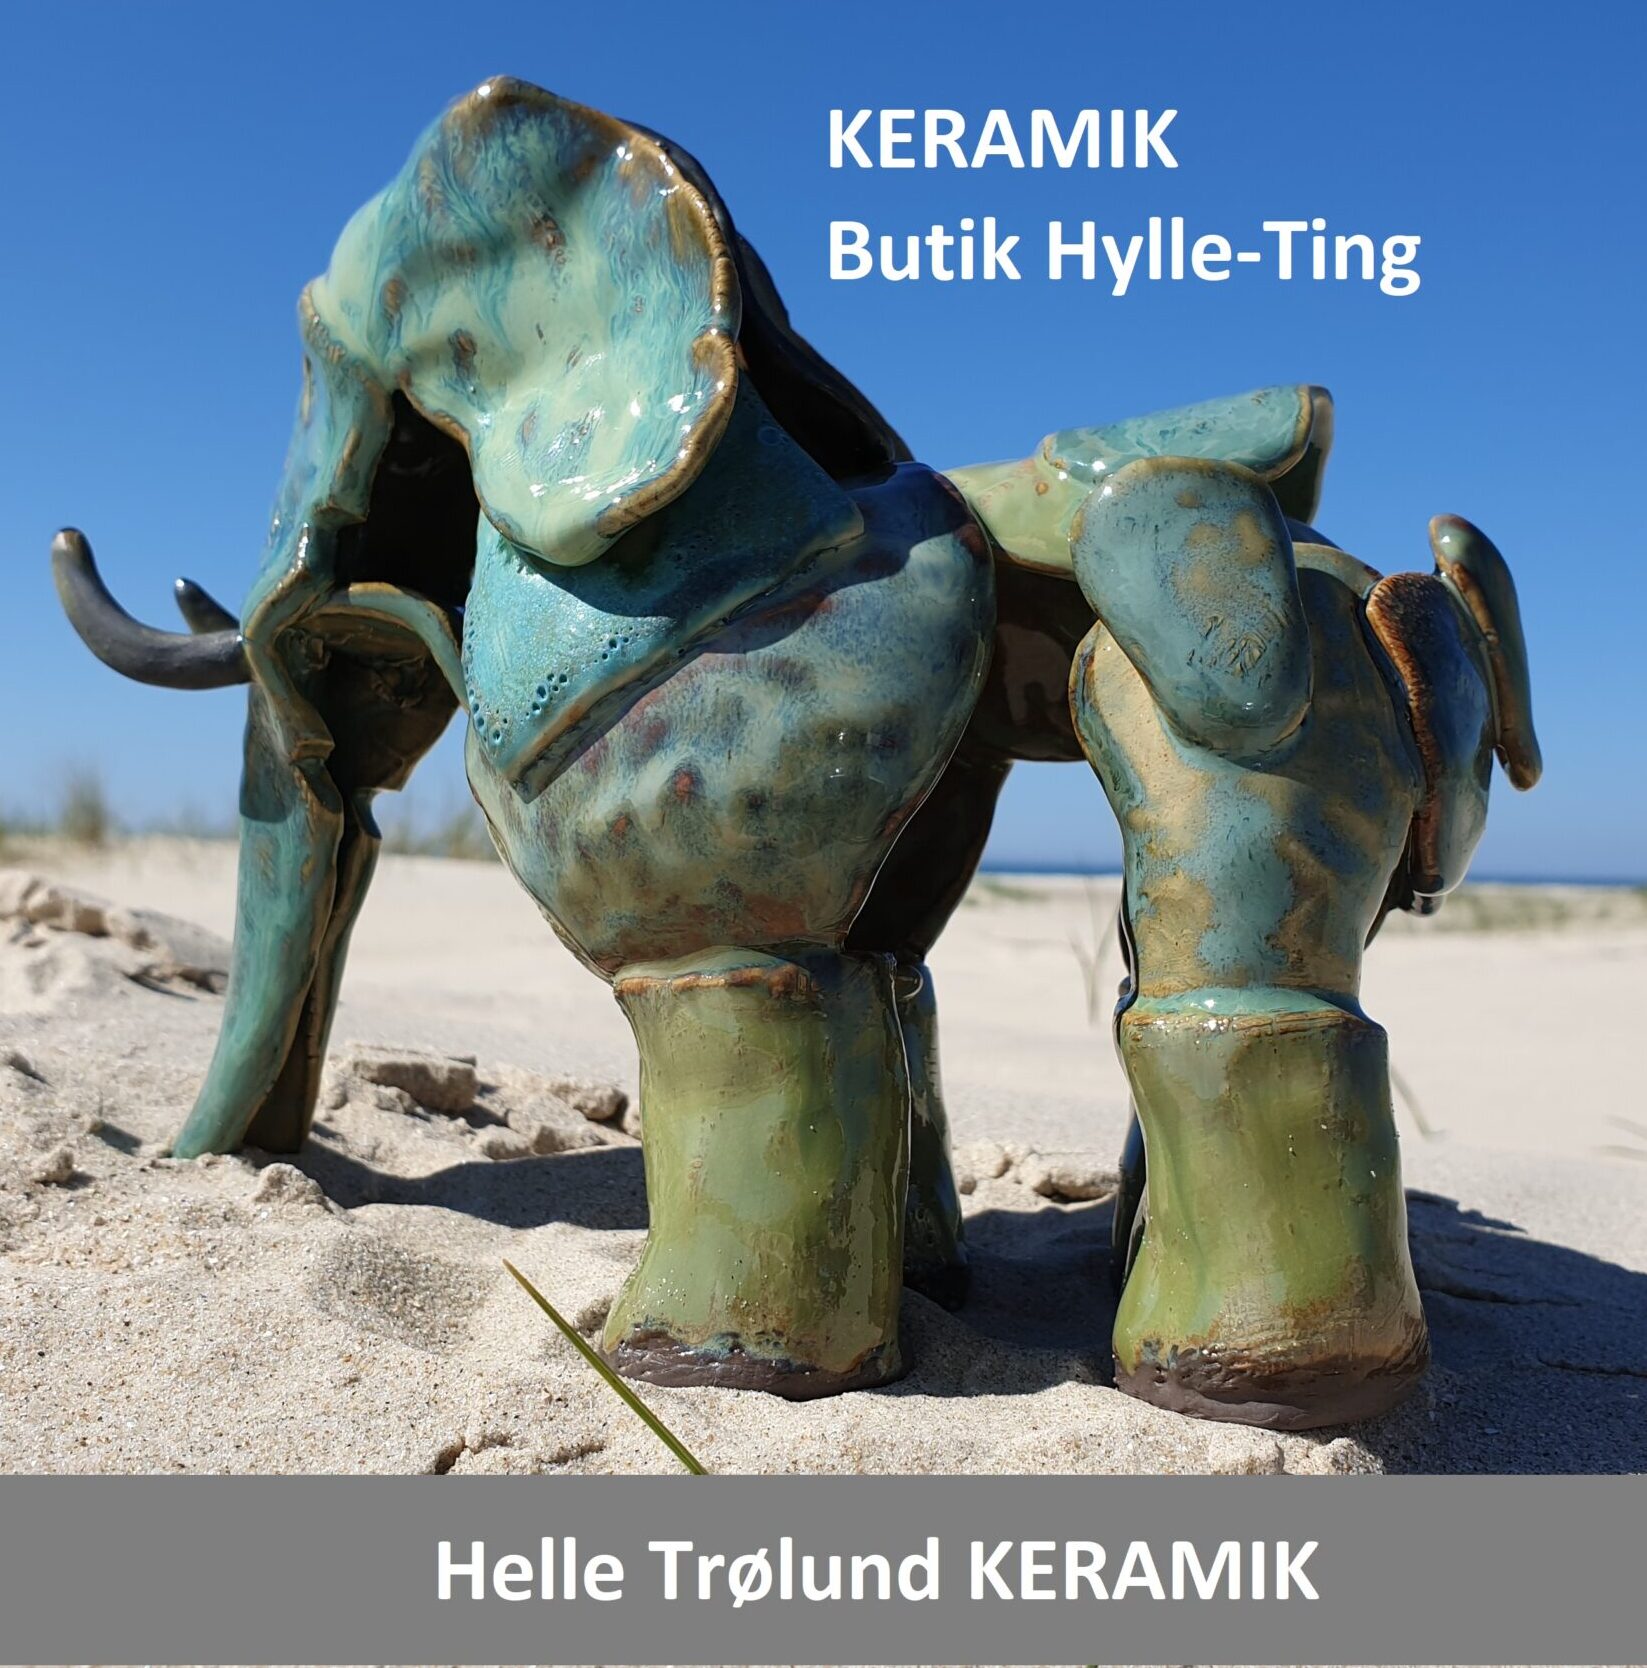 Helle Trølund Keramik / Butik Hylle-Ting Kunsthåndværk / Webshop